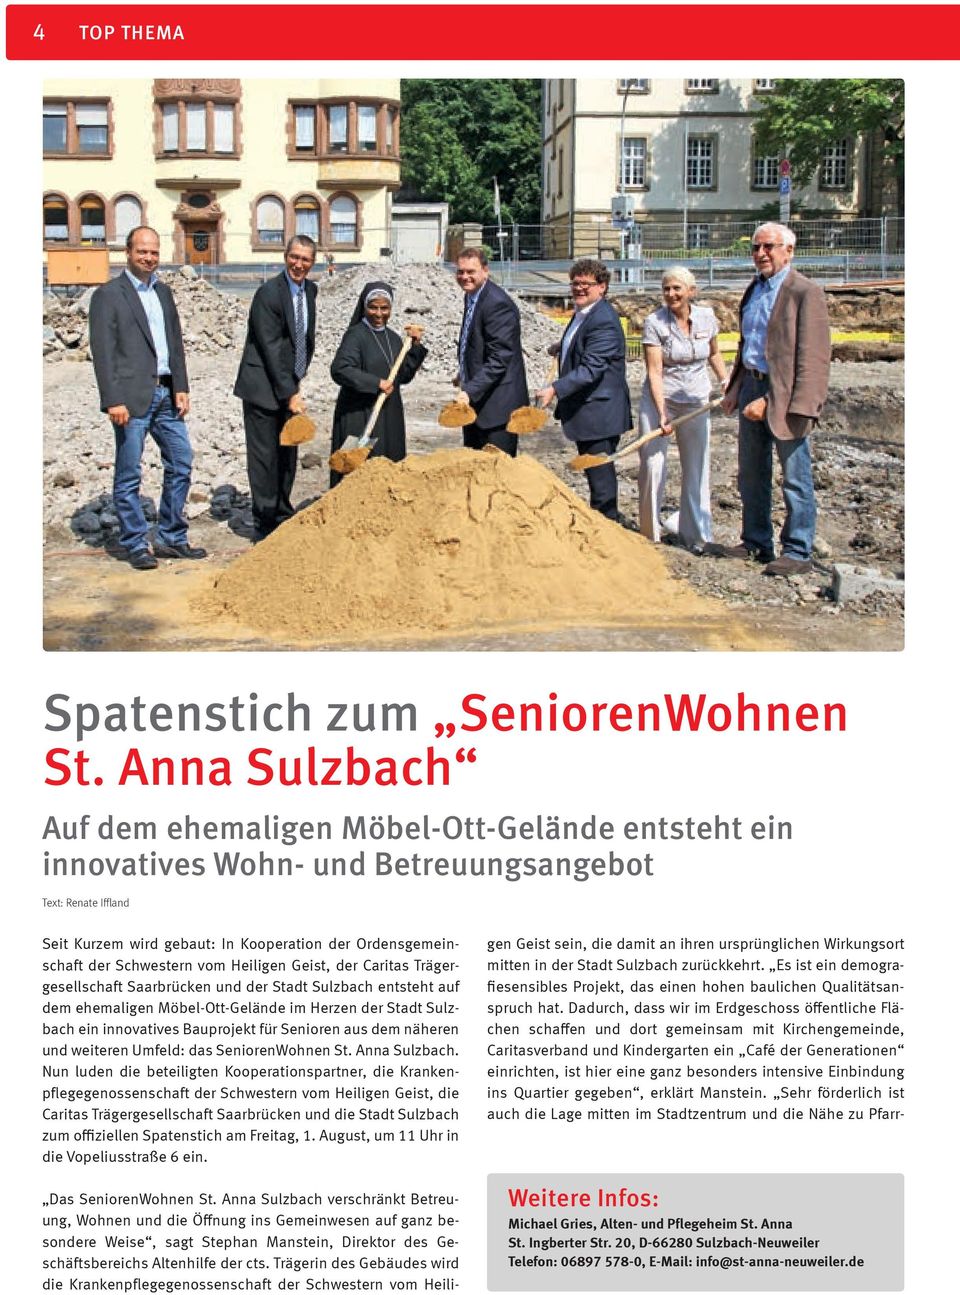 Schwestern vom Heiligen Geist, der Caritas Trägergesellschaft Saarbrücken und der Stadt Sulzbach entsteht auf dem ehemaligen Möbel-Ott-Gelände im Herzen der Stadt Sulzbach ein innovatives Bauprojekt